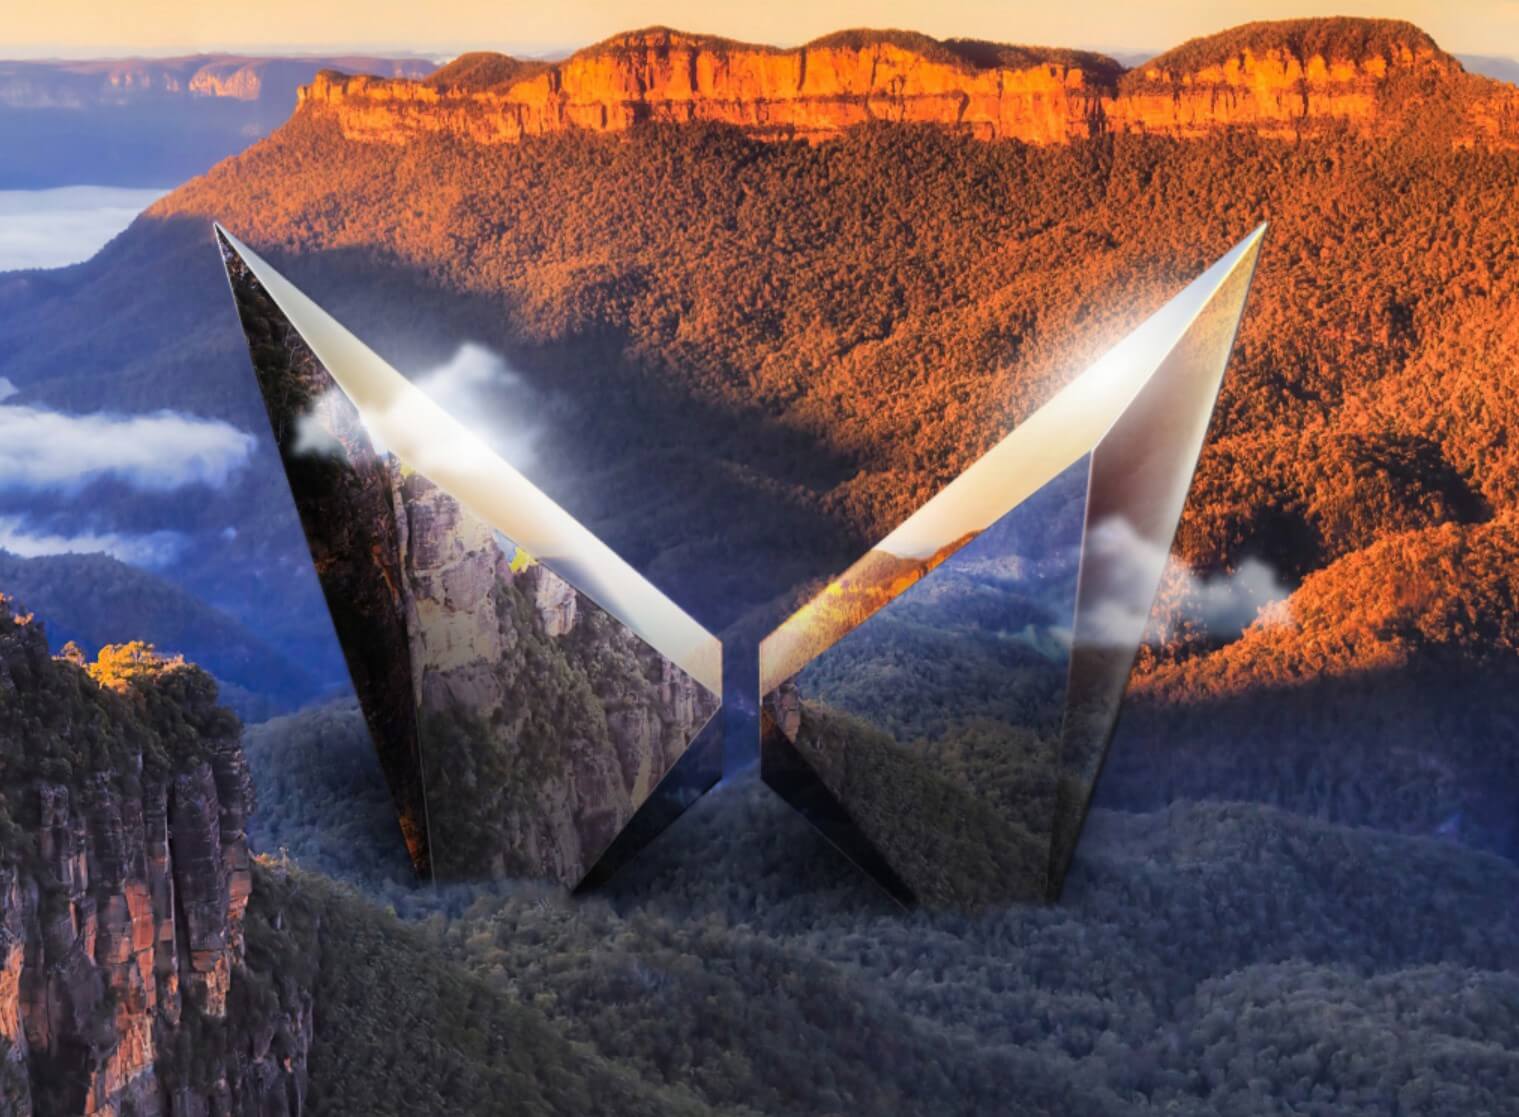 aria-label="Mahindra Twin Peaks Australia 2"